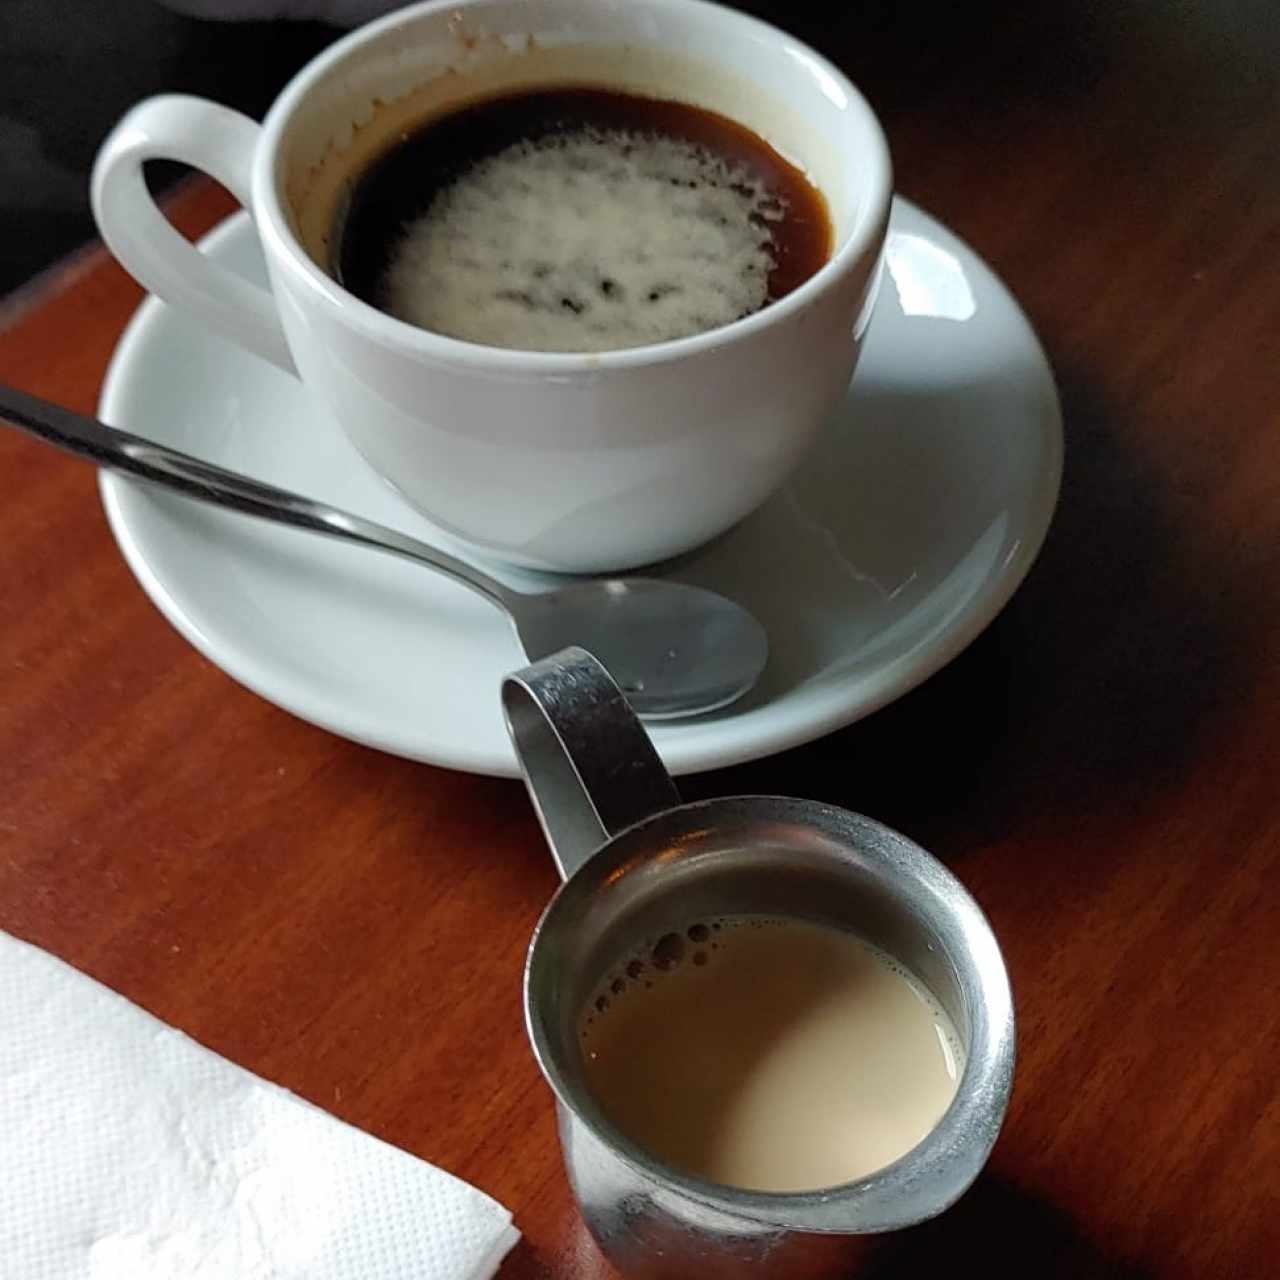 Café Negro